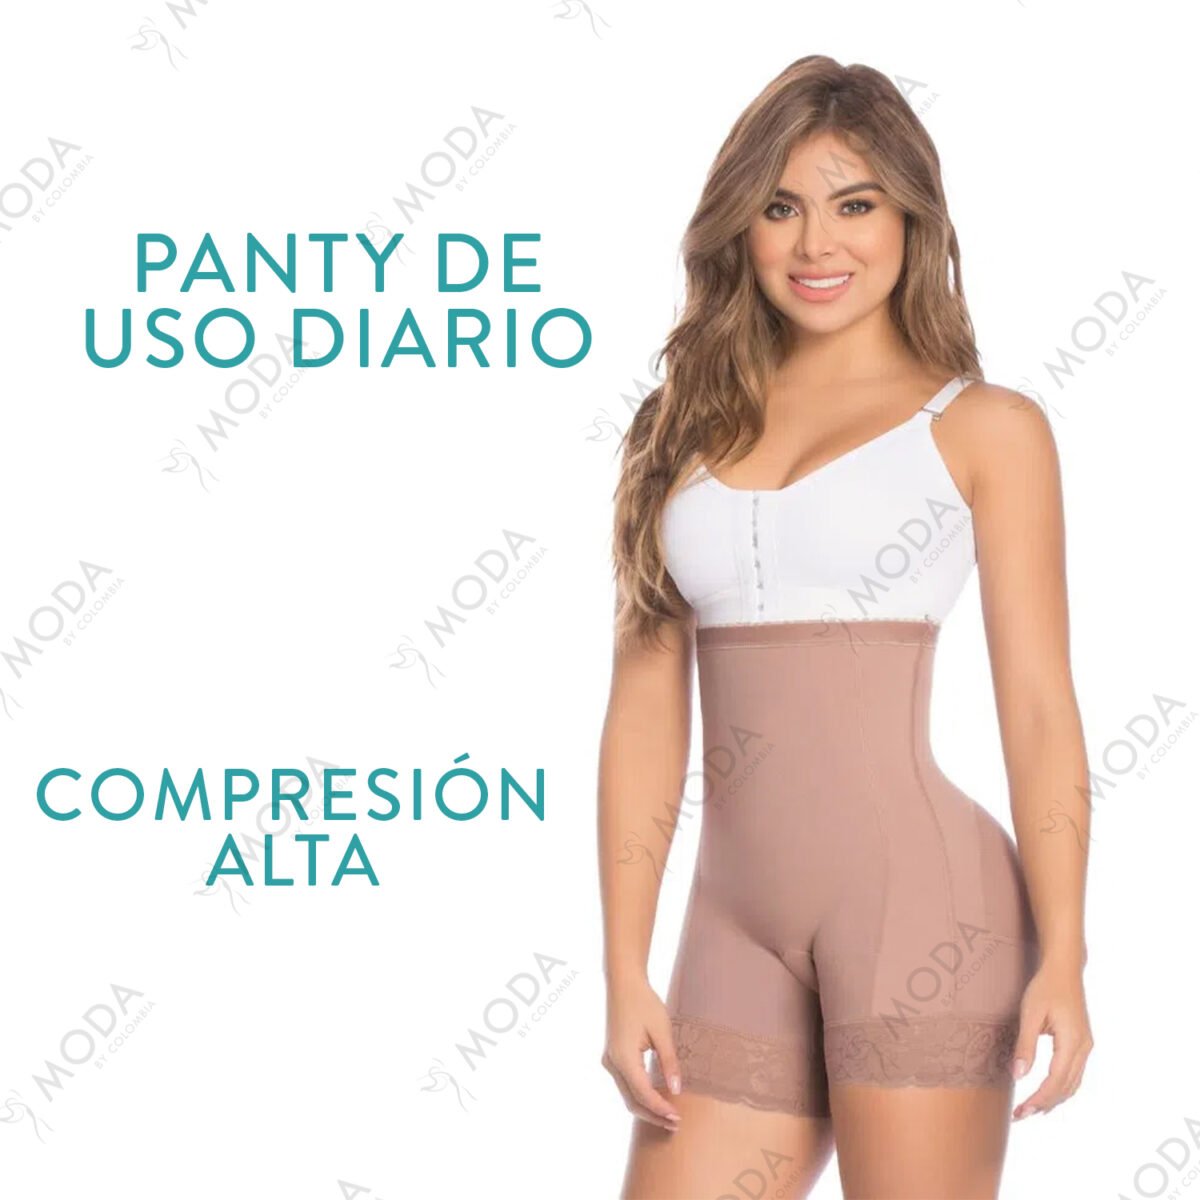 Con la faja colombiana panty alto con moldeo podrás lucir cualquier prenda ajustada de tu preferencia. Ideal para usar con vestidos, shorts o leggins.